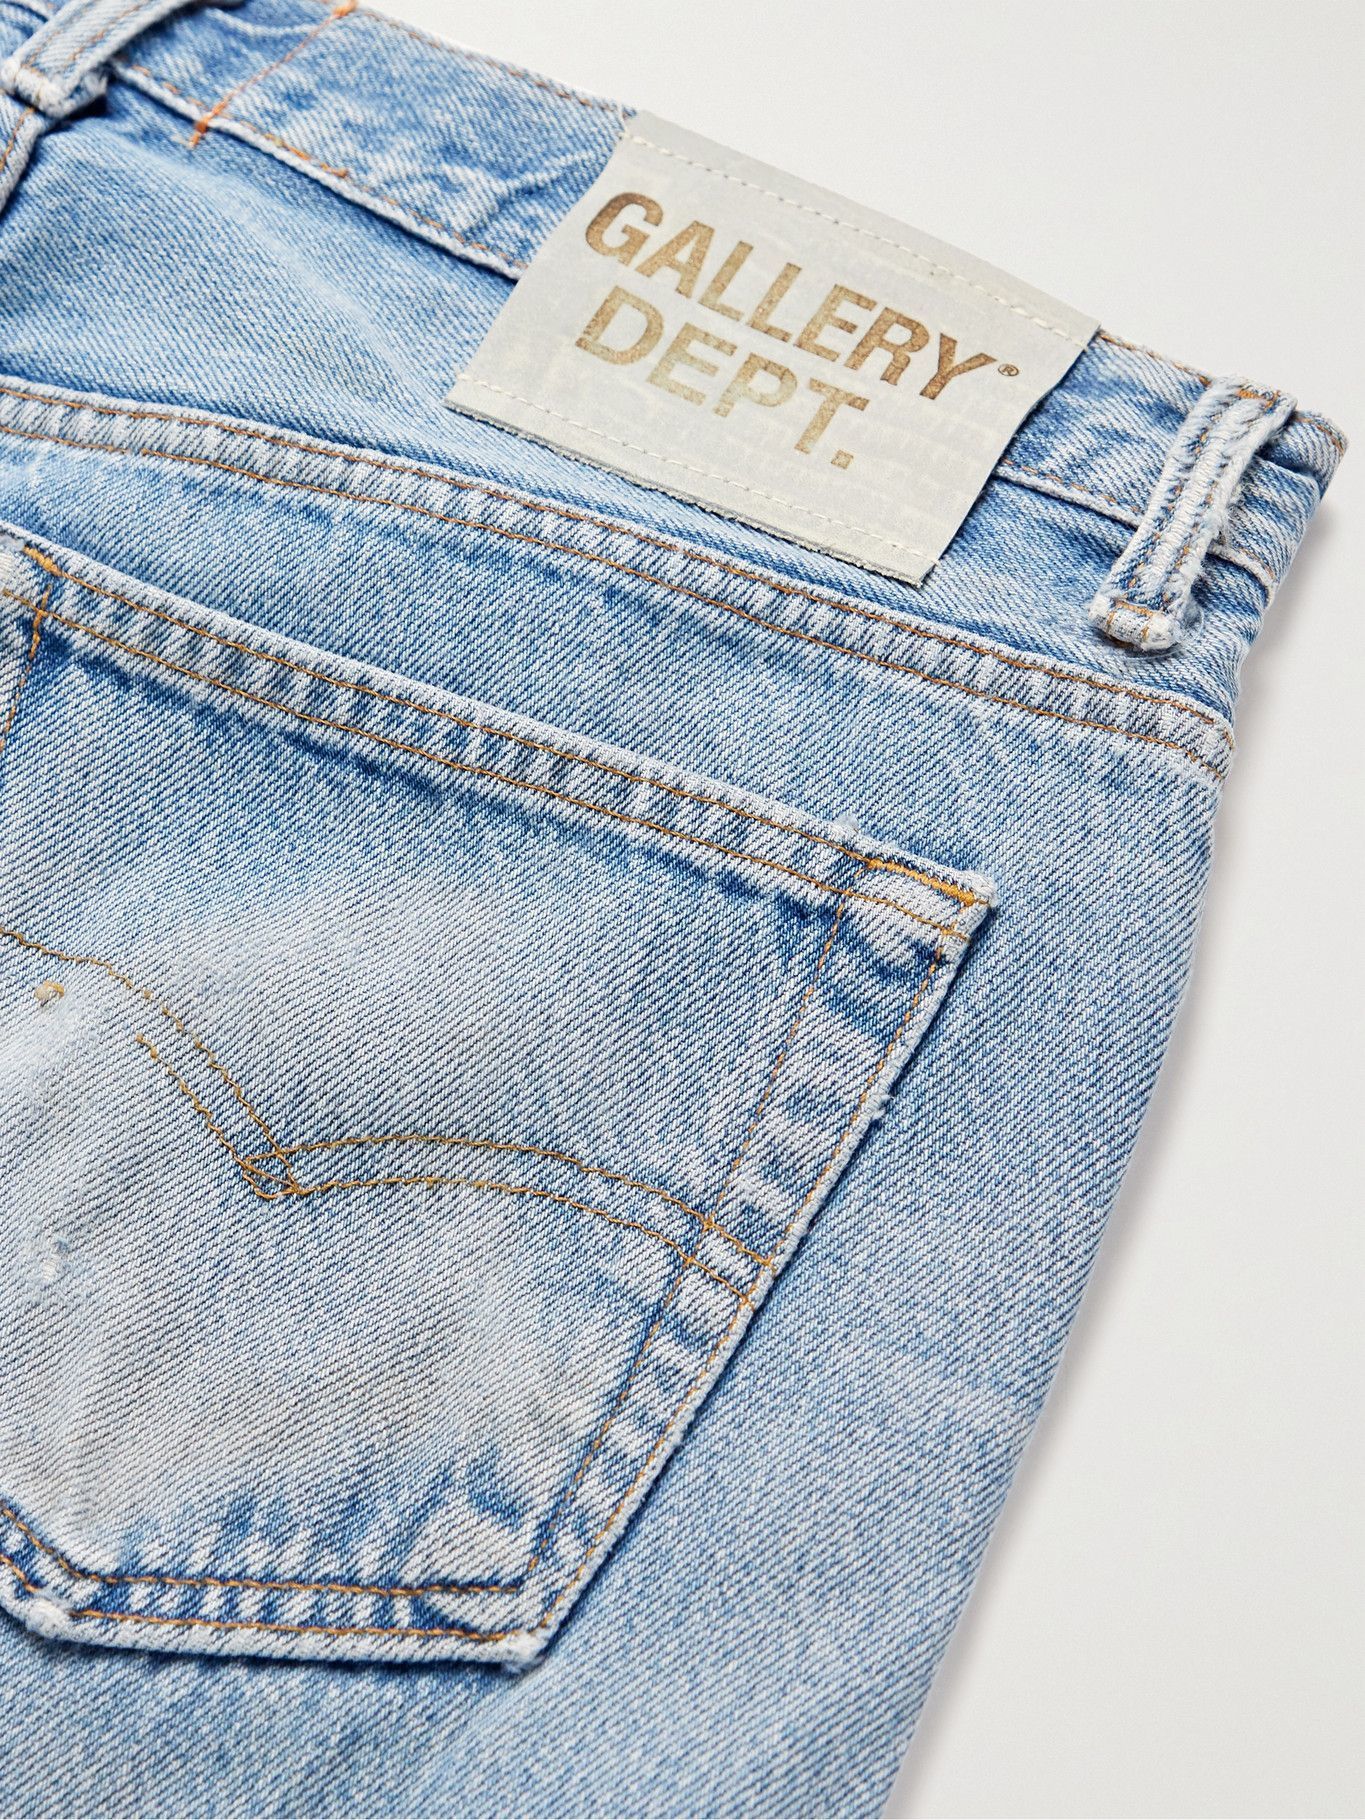 GALLERY DEPT. - LA Flare Slim-Fit Distressed Denim Jeans - Blue Gallery Dept .